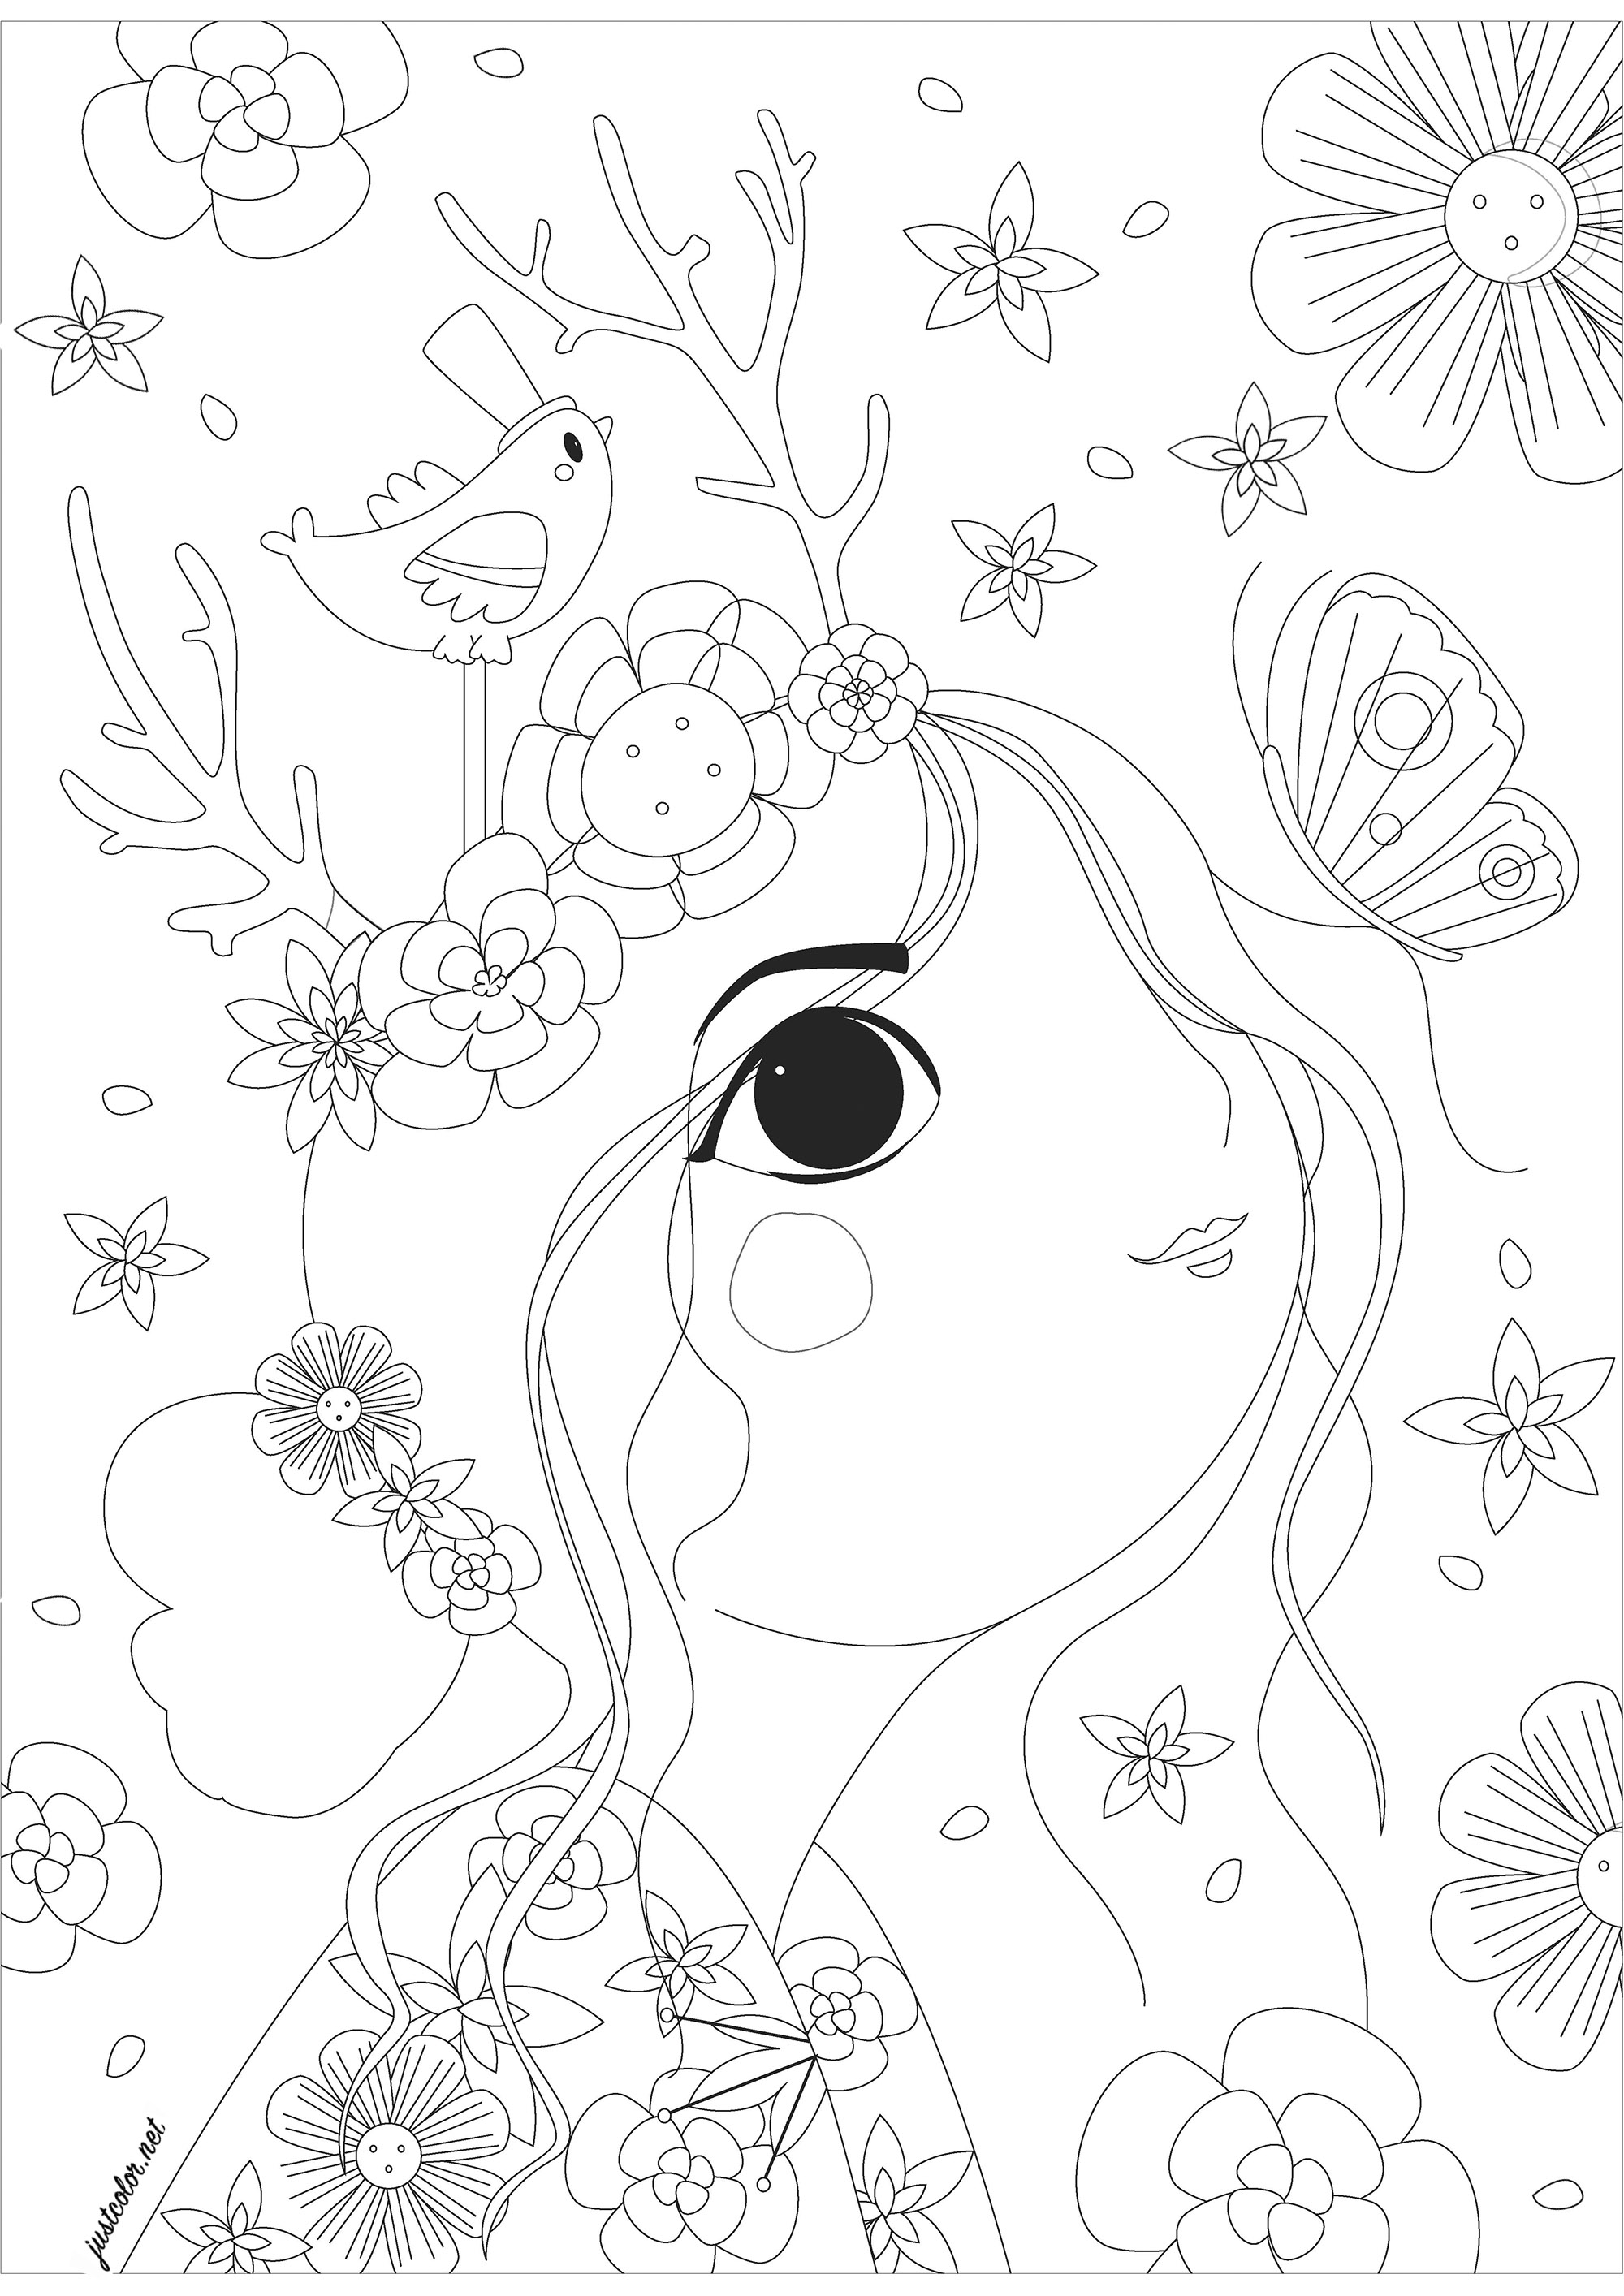 Donna di profilo che guarda una farfalla, circondata da fiori. Una pagina da colorare molto rilassante, in attesa di bei colori per tutti quei fiori, farfalle, graziosi uccellini e personaggi femminili disegnati con uno stile unico, Artista : Gaelle Picard